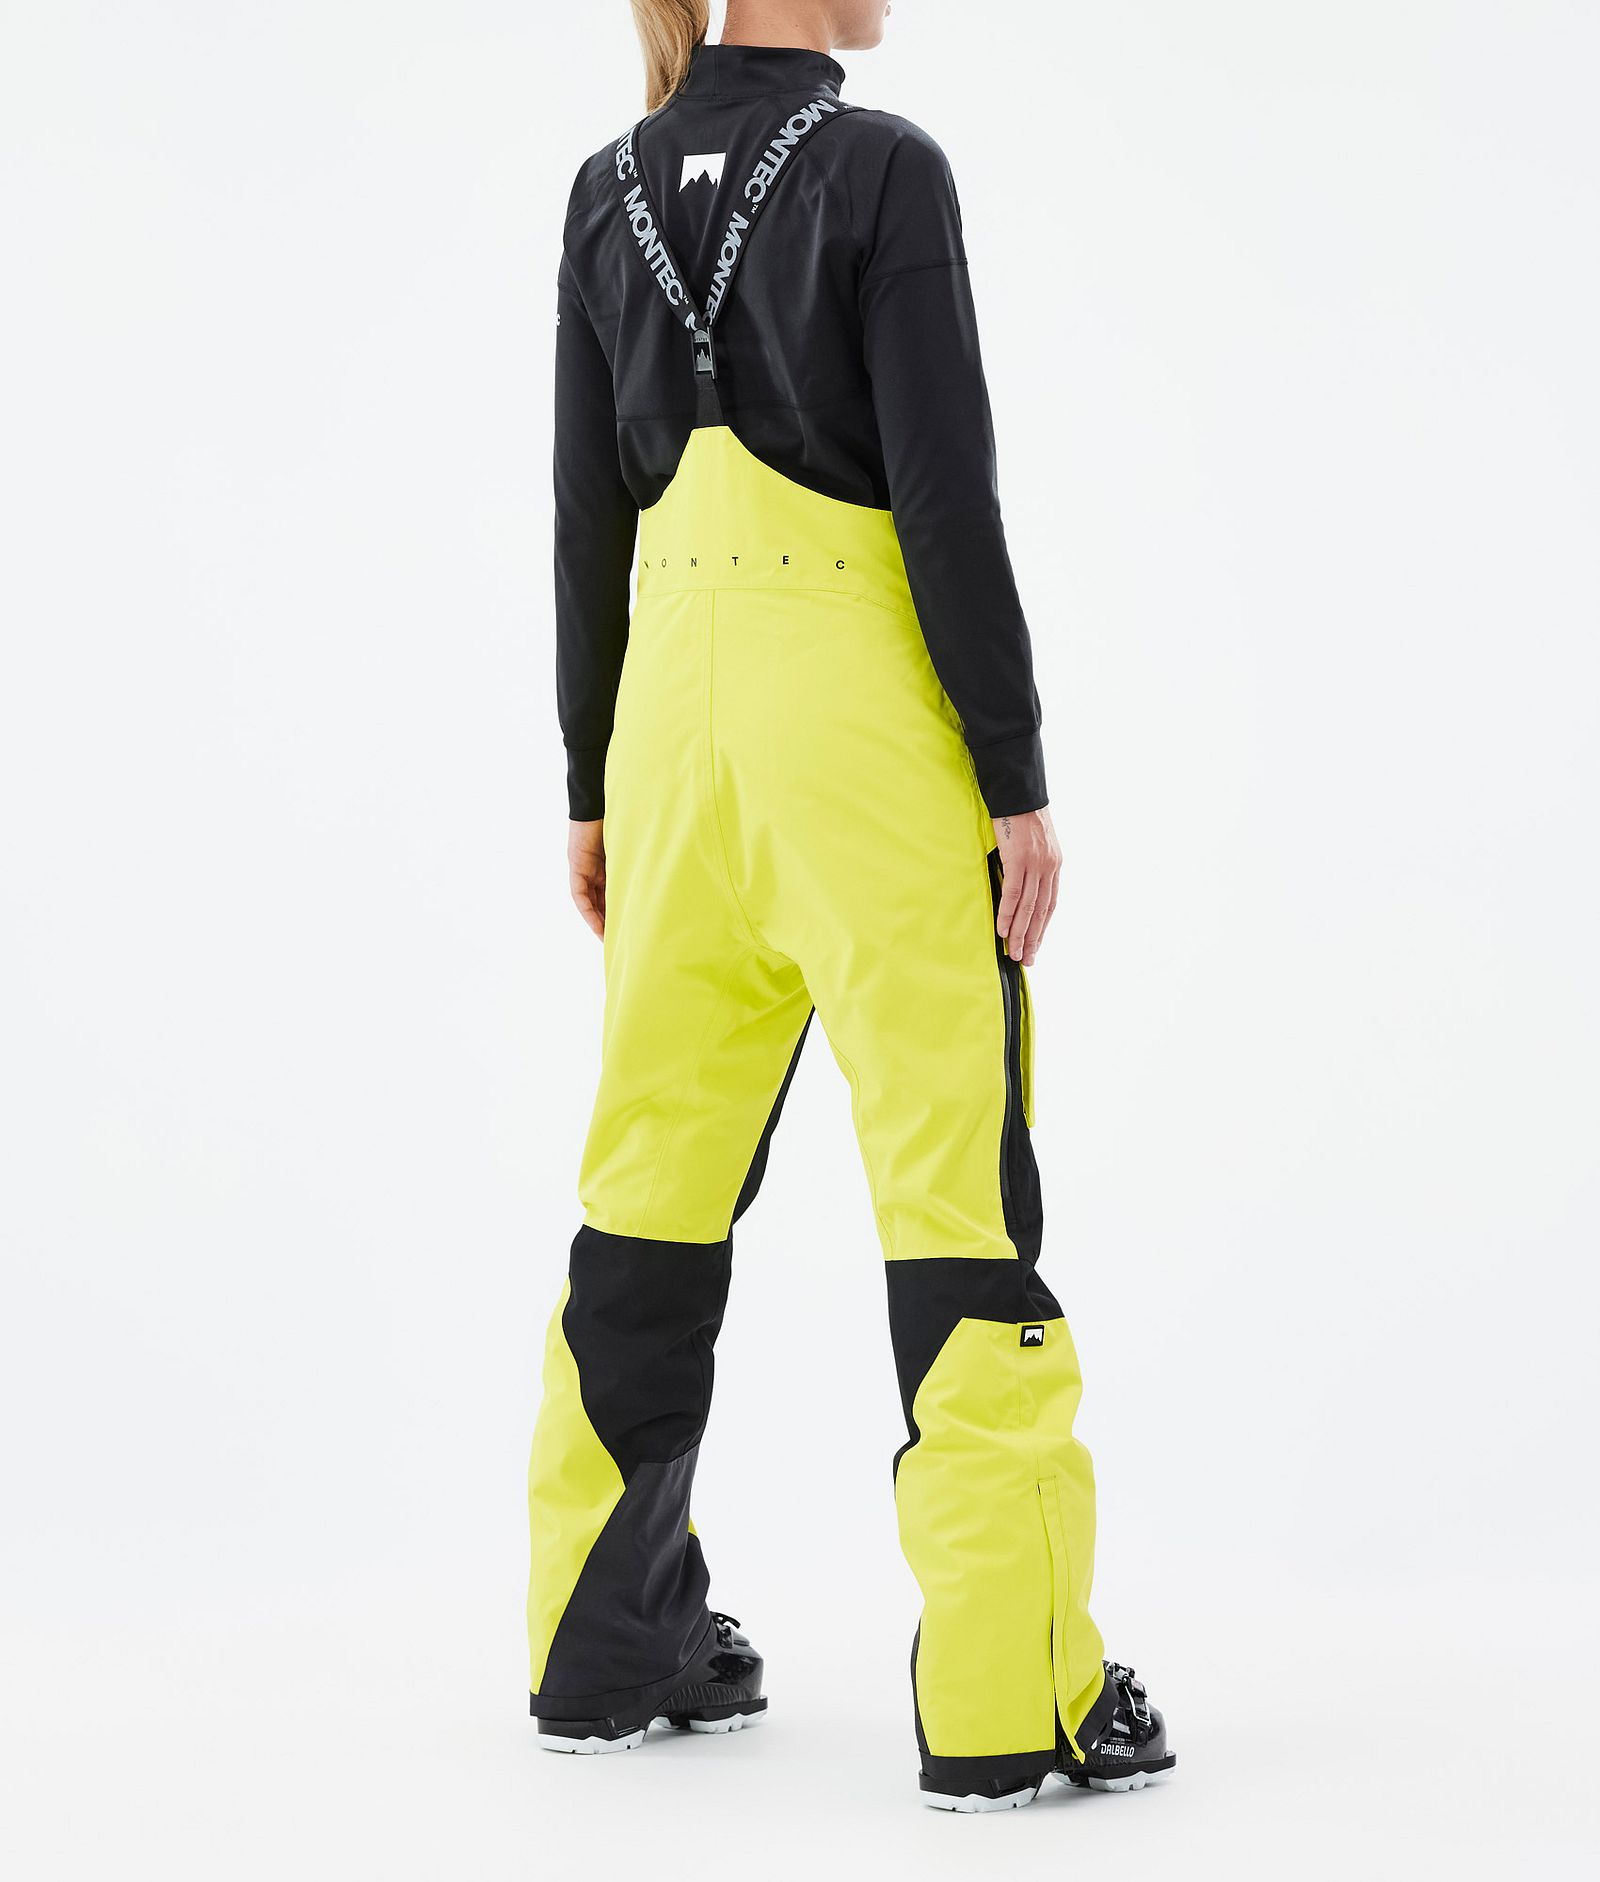 Fawk W Pantaloni Sci Donna Bright Yellow/Black, Immagine 3 di 6